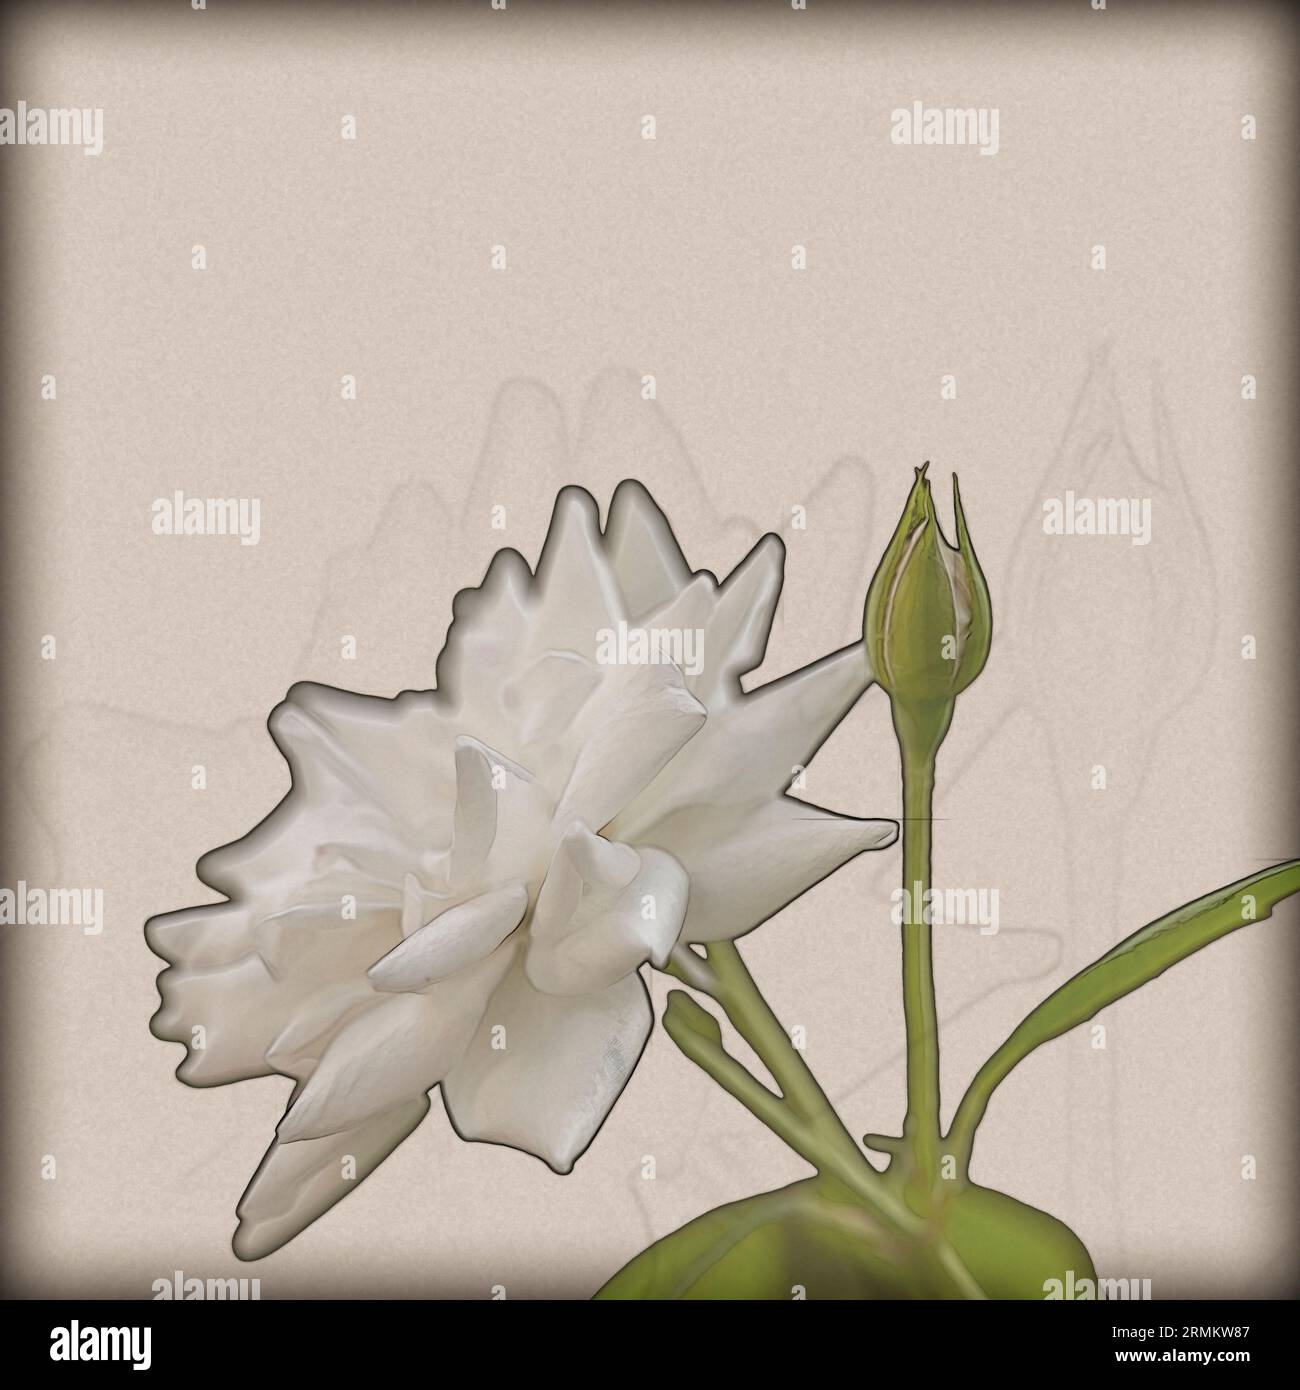 Image numériquement améliorée d'un gros plan d'une belle et parfaite rose blanche d'iceberg Banque D'Images